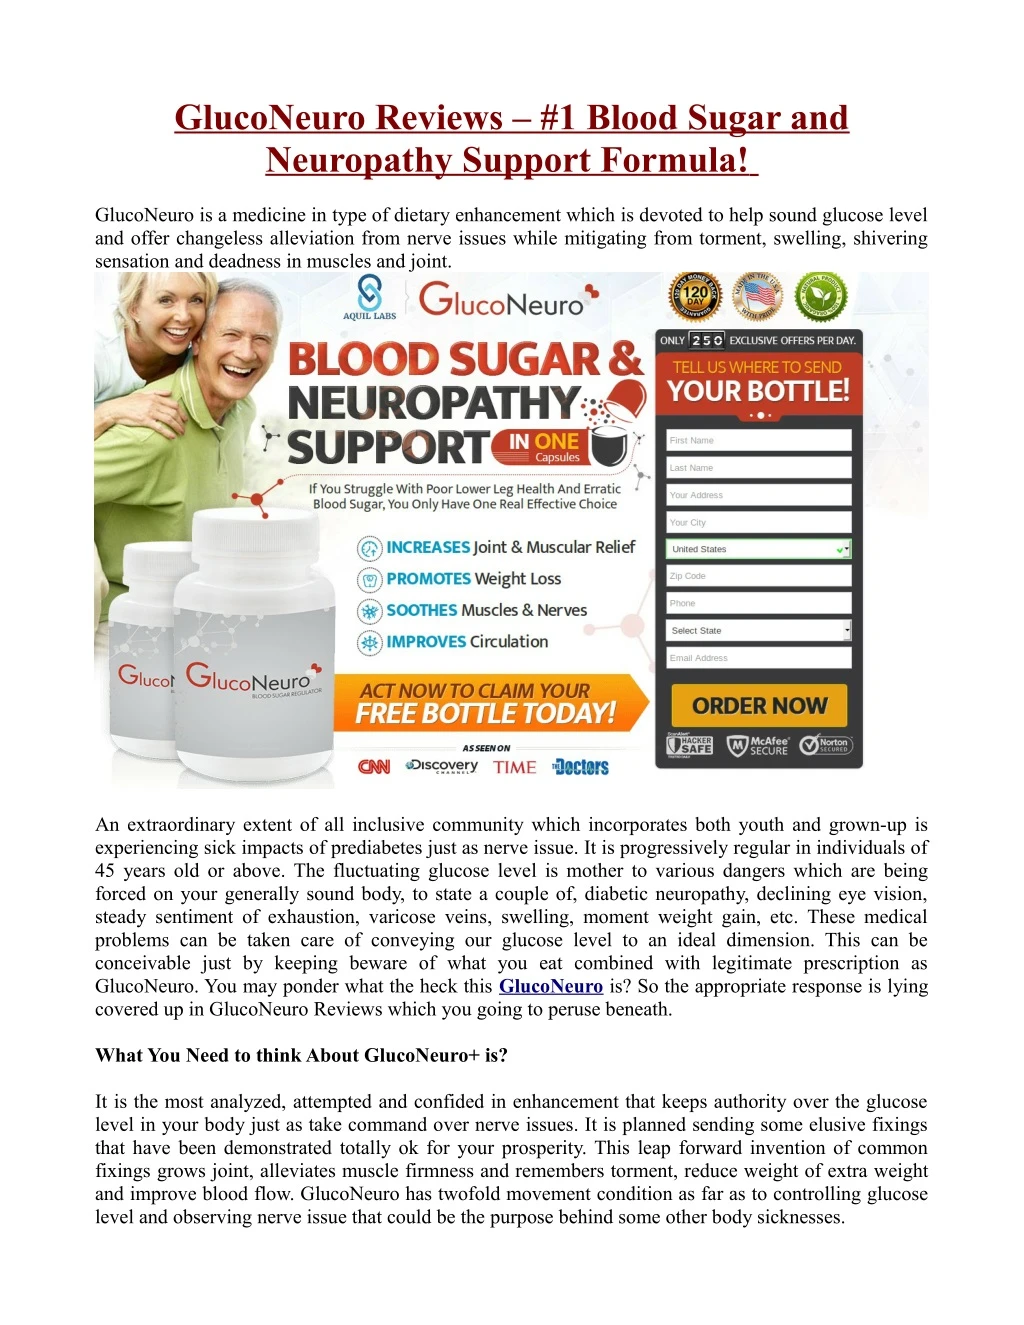 gluconeuro reviews 1 blood sugar and neuropathy